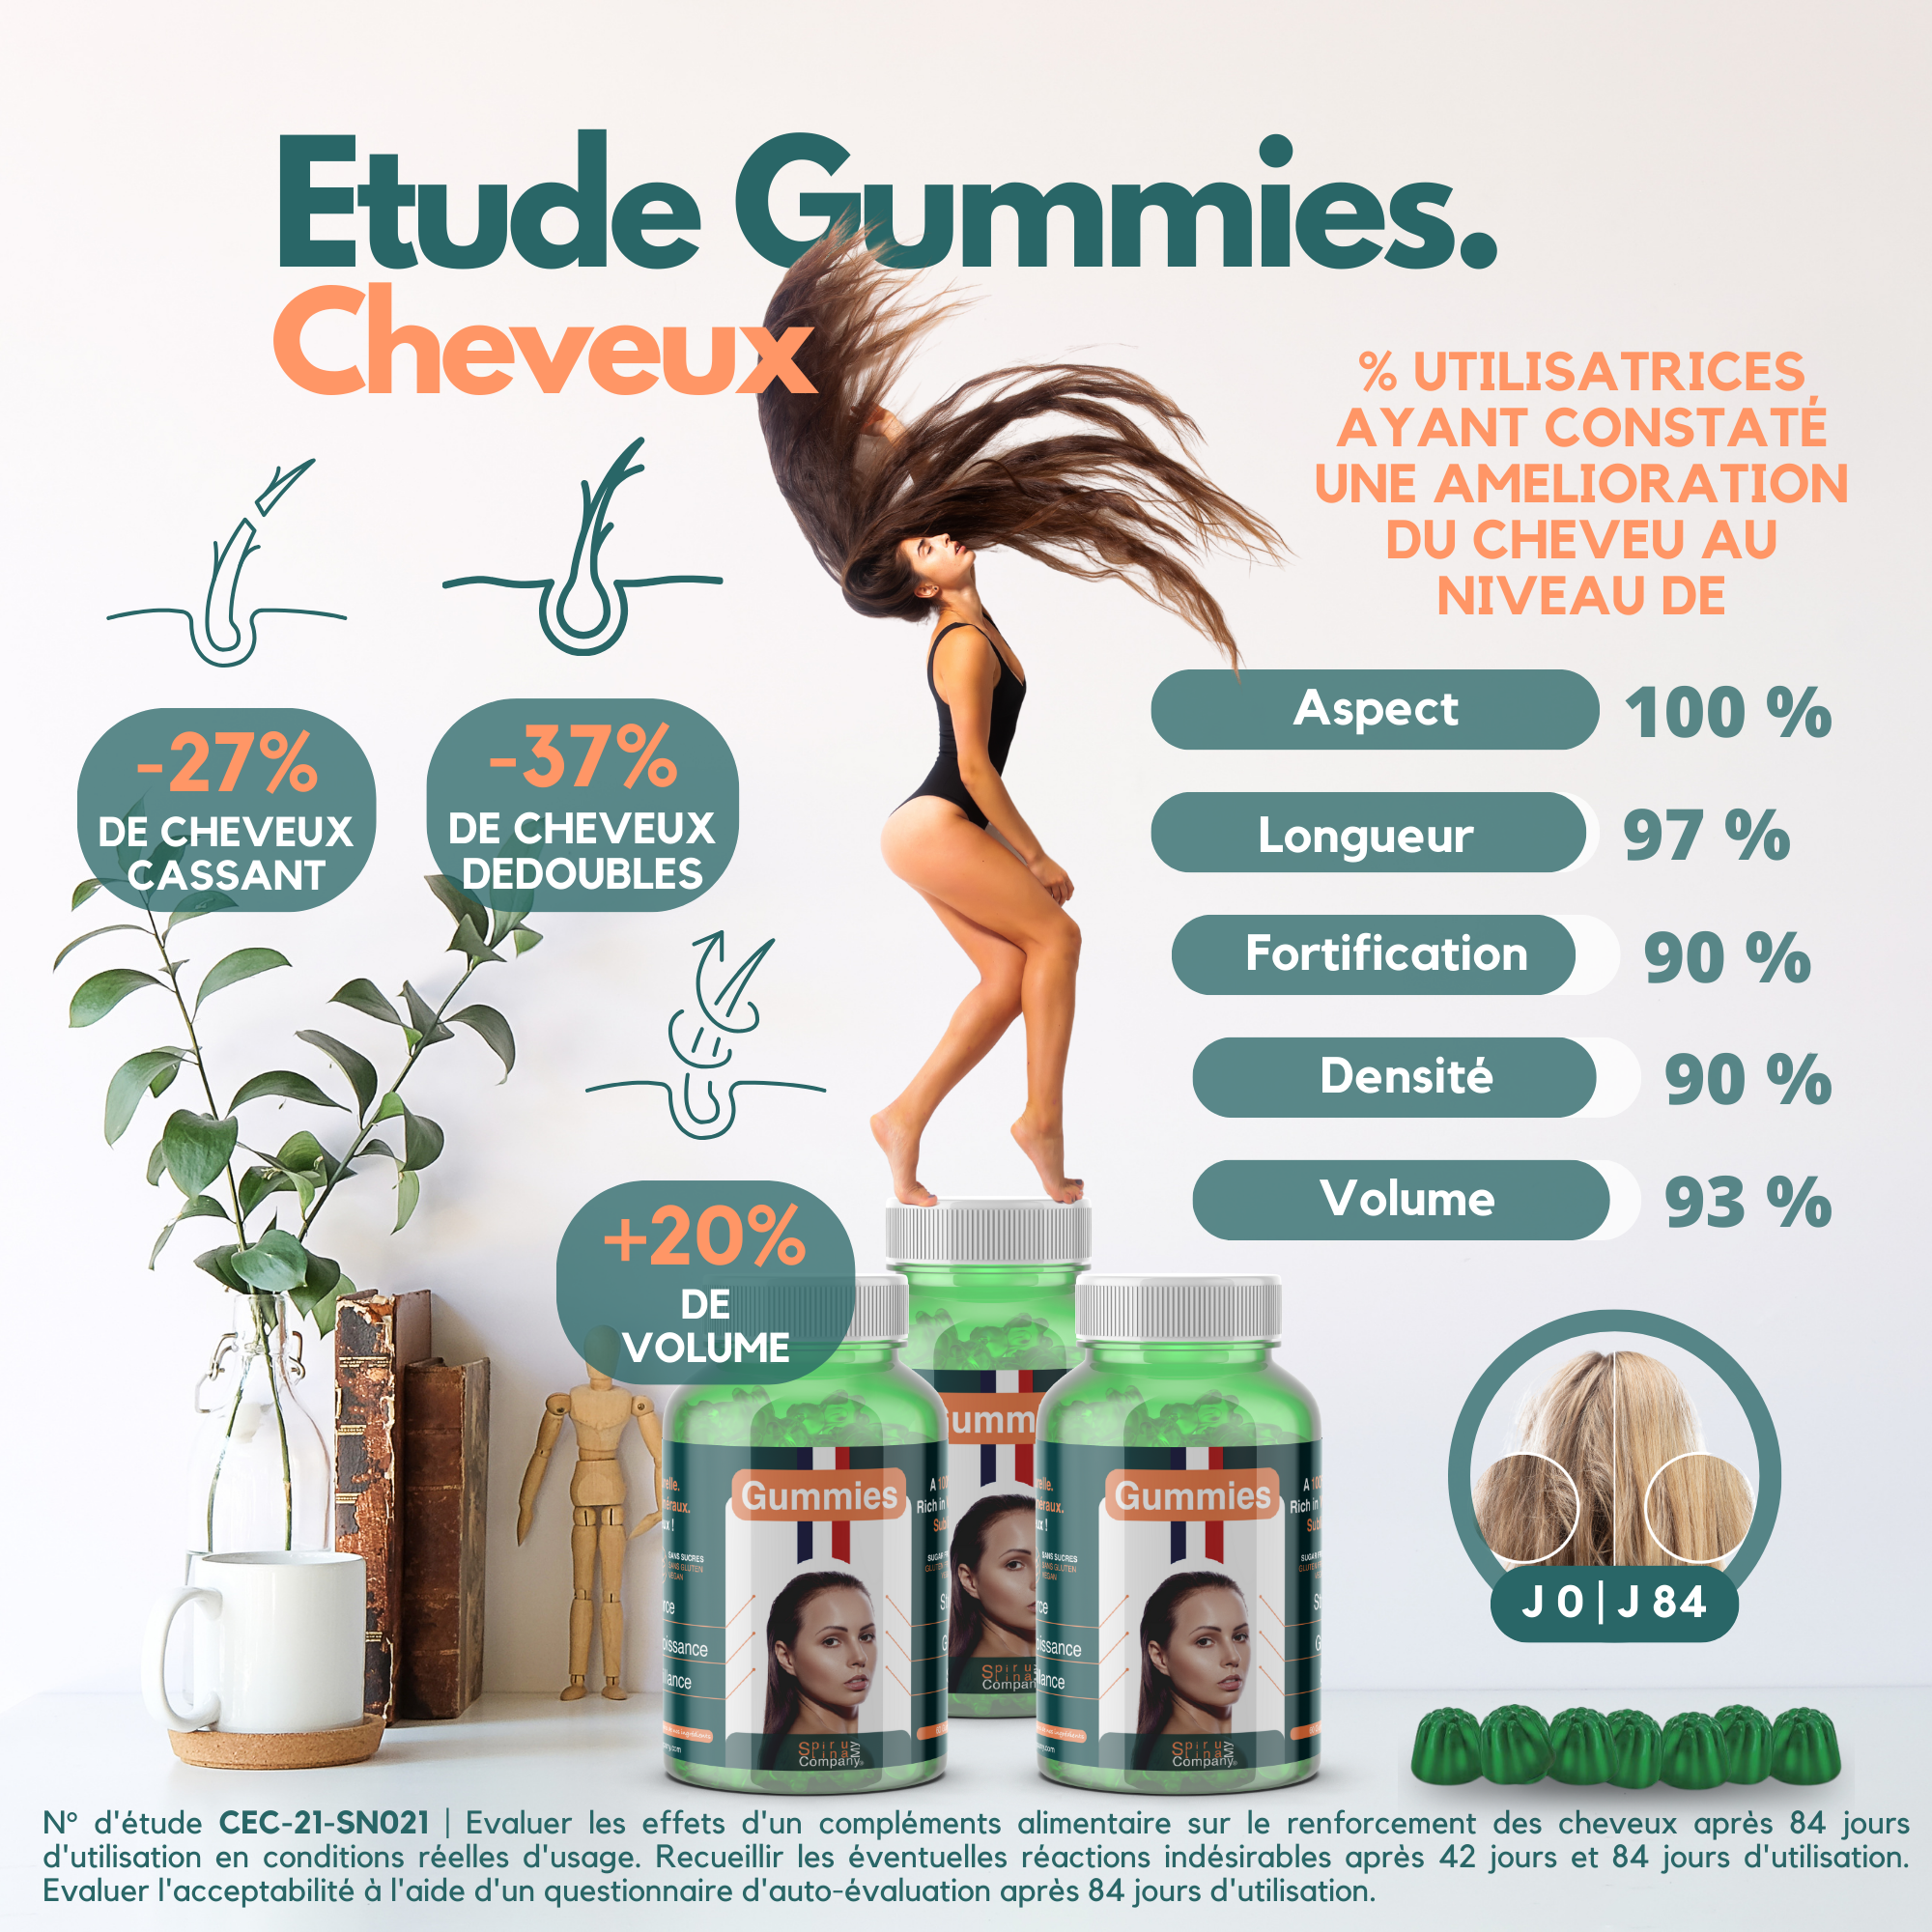 Gummies Hair Strength & Growth 100% Natural Sugar Free